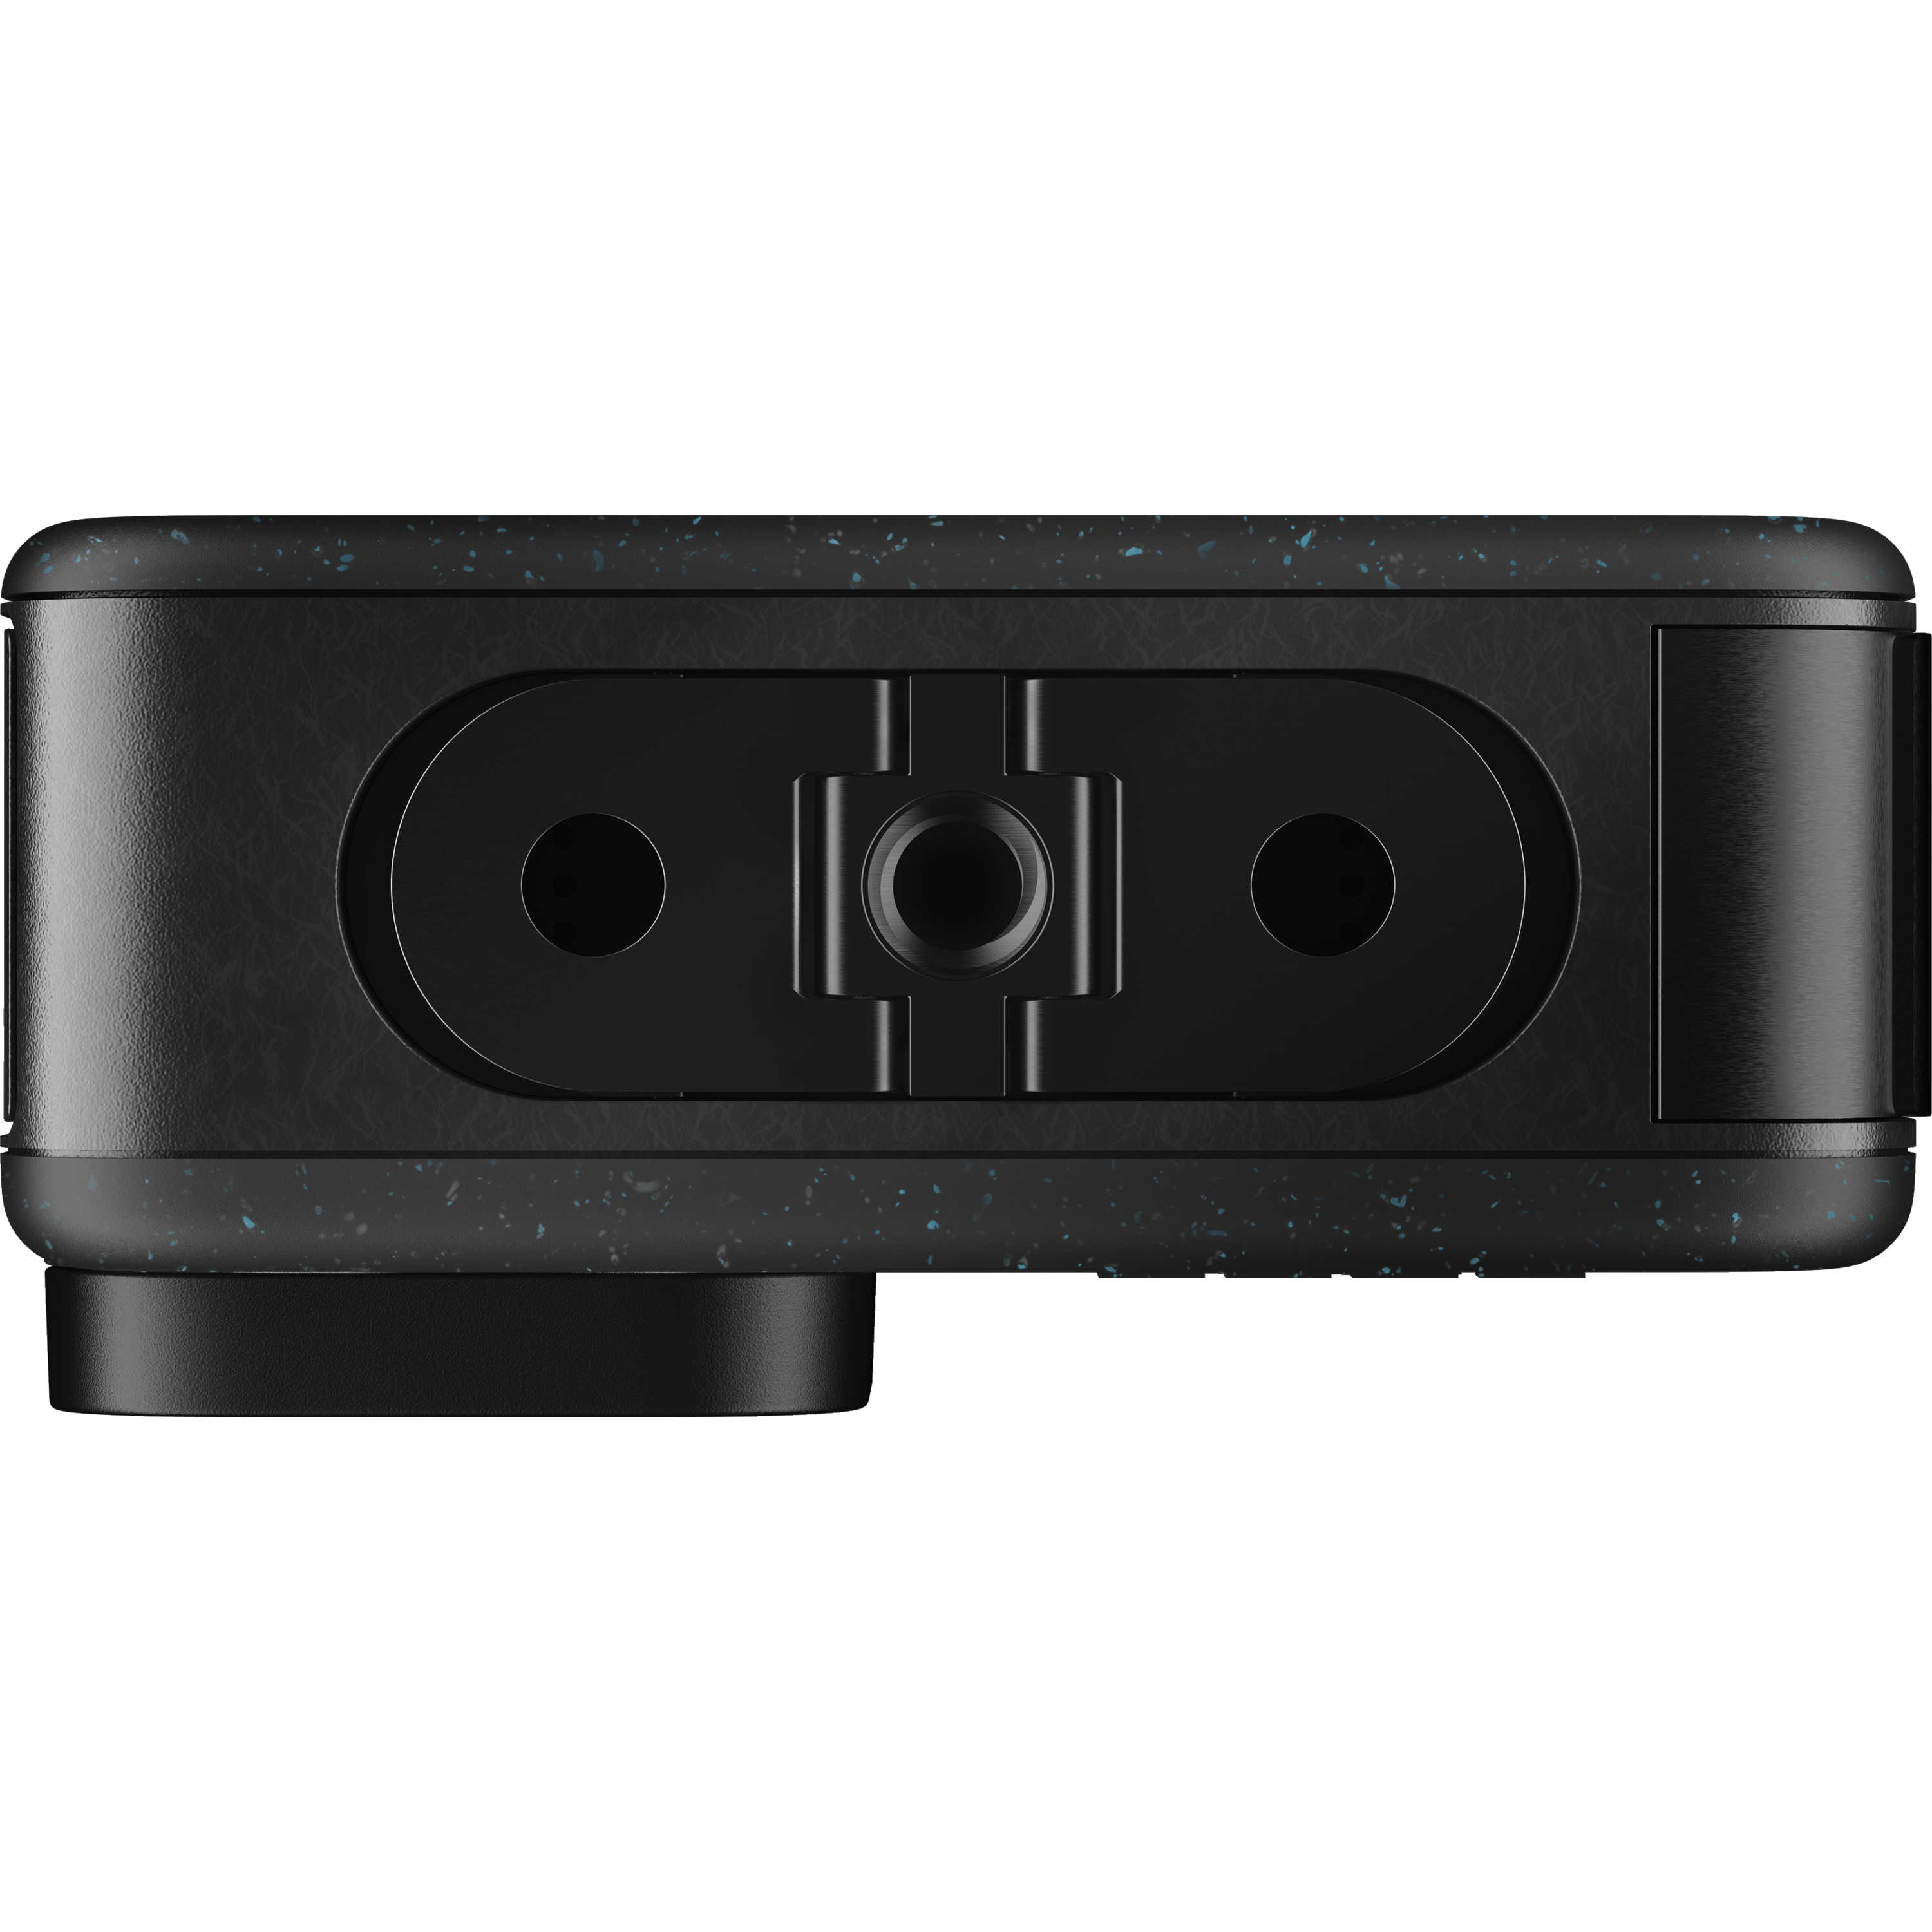 מצלמת אקסטרים GoPro Hero 12 Black - צבע שחור שנתיים אחריות ע